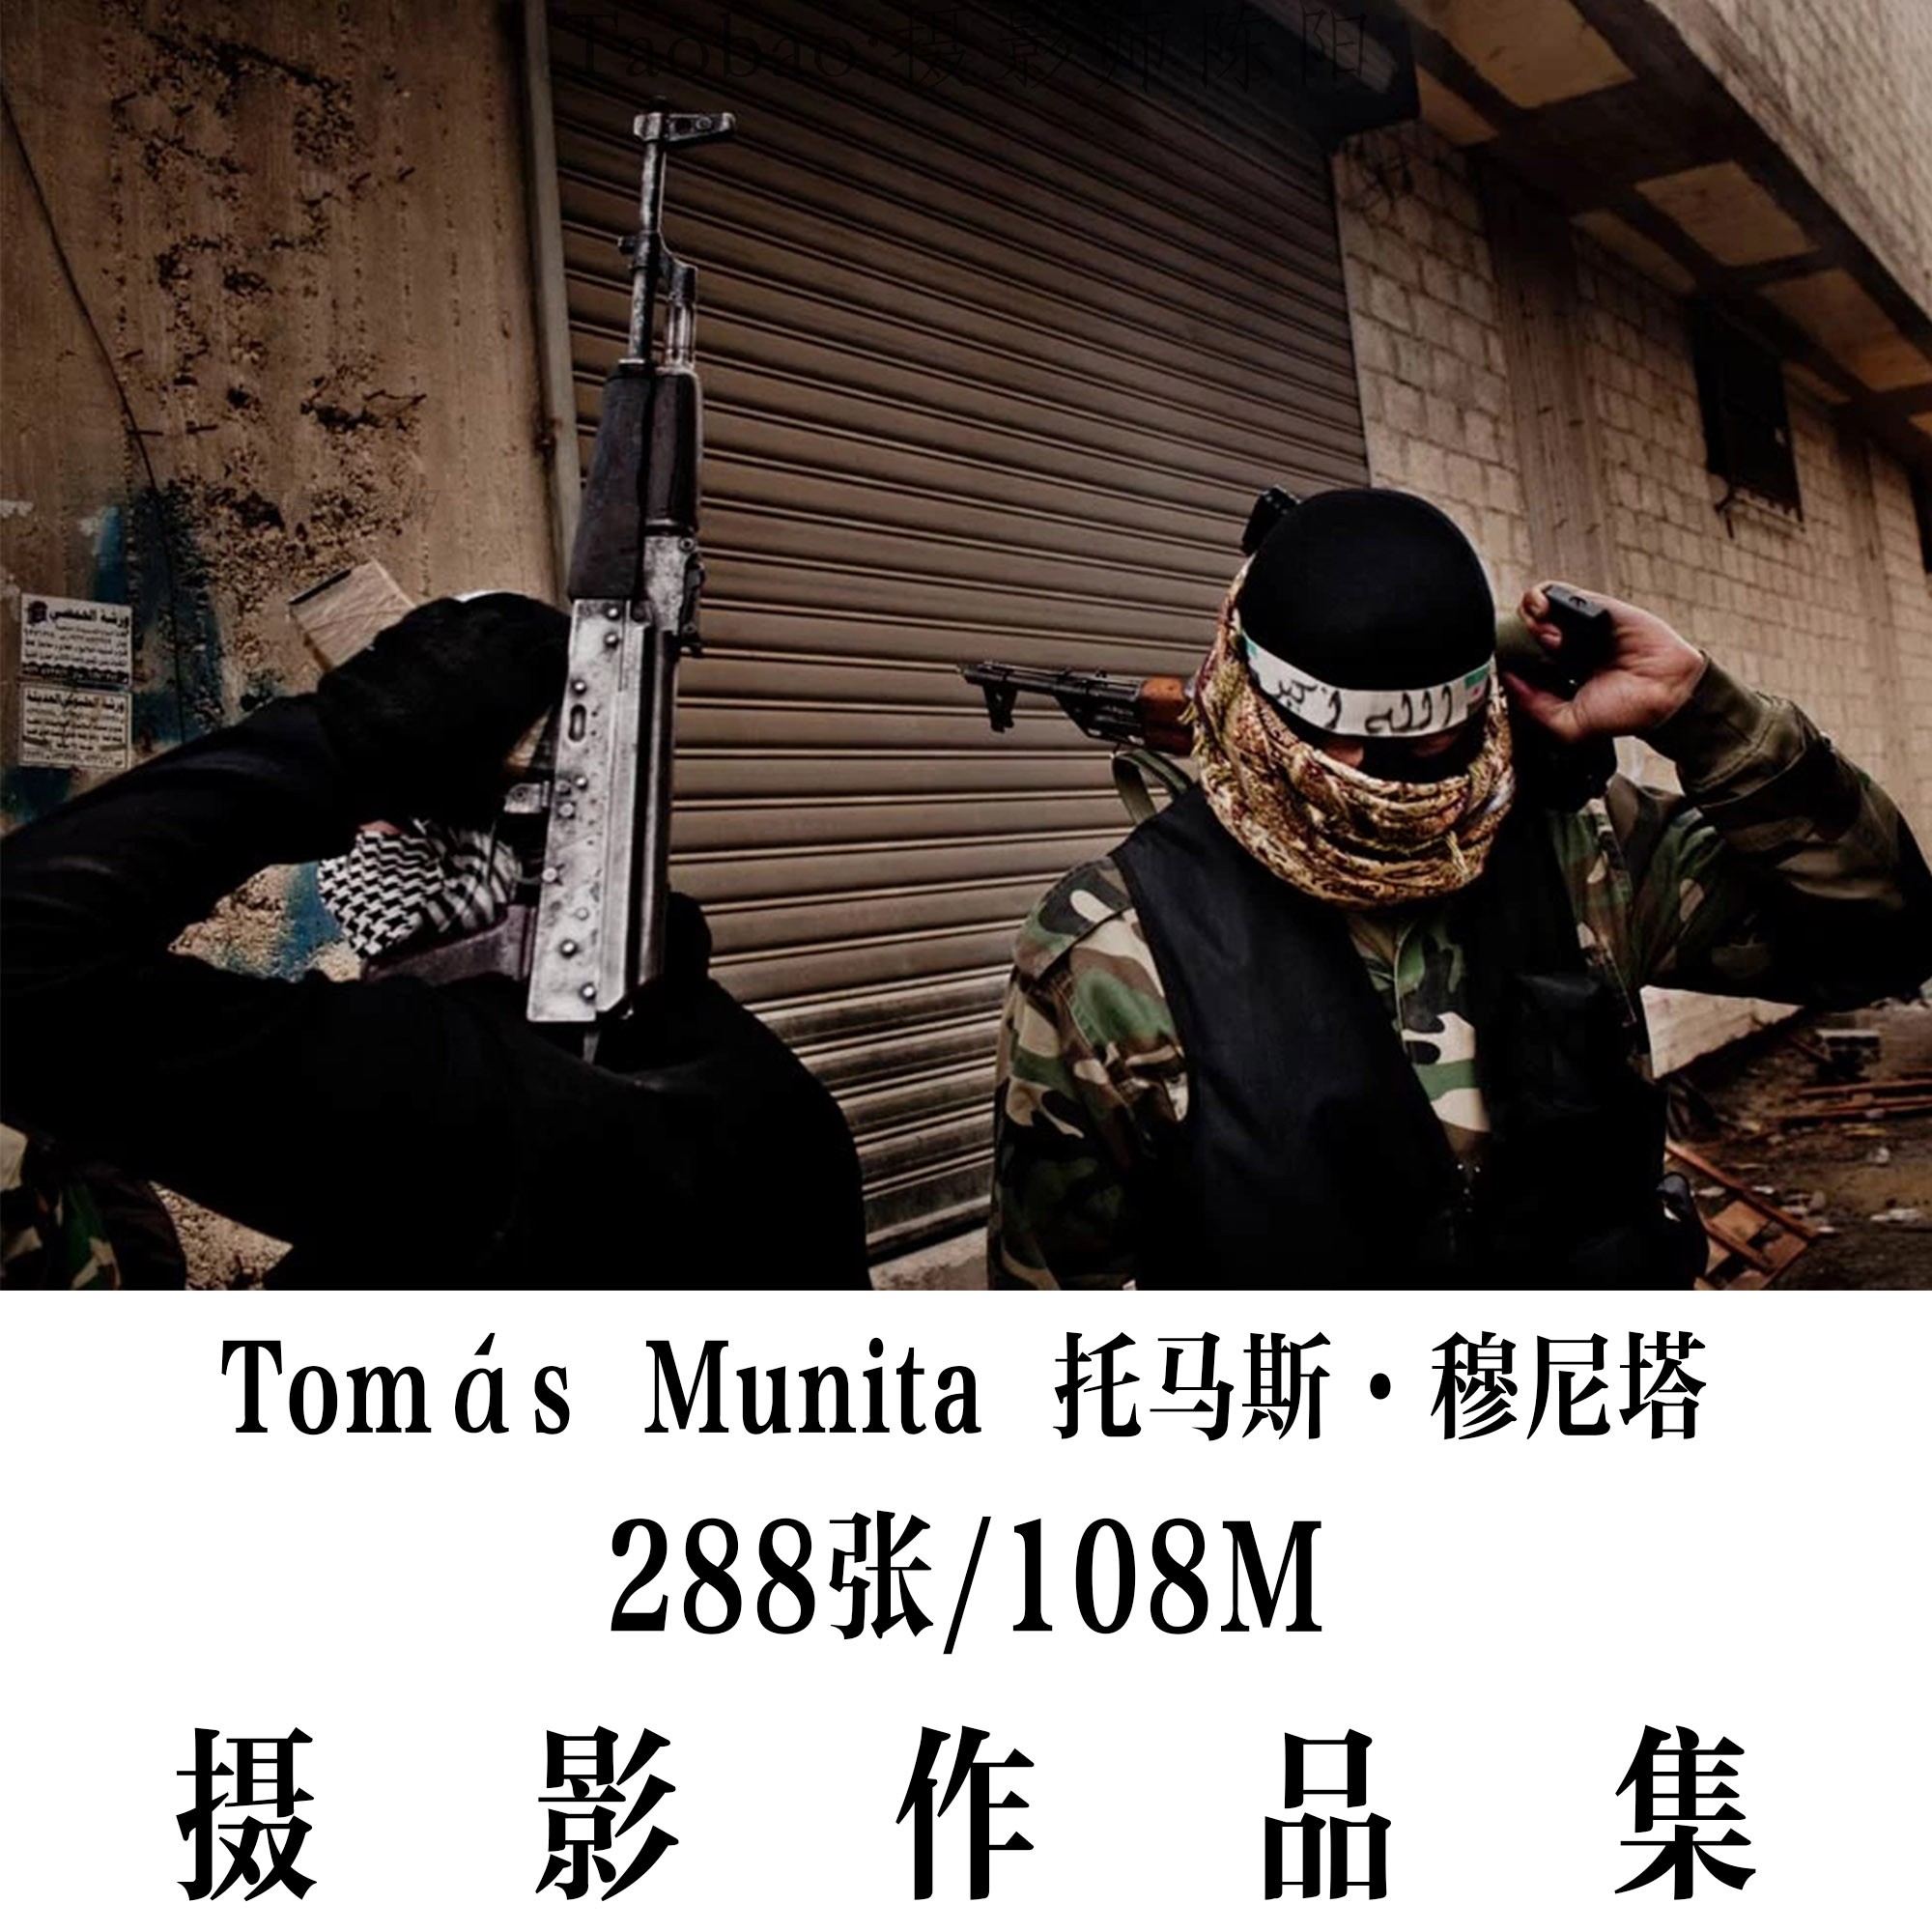 Tomás Munita 托马斯·穆尼塔 摄影集 摄影项目 作品集 电子图片